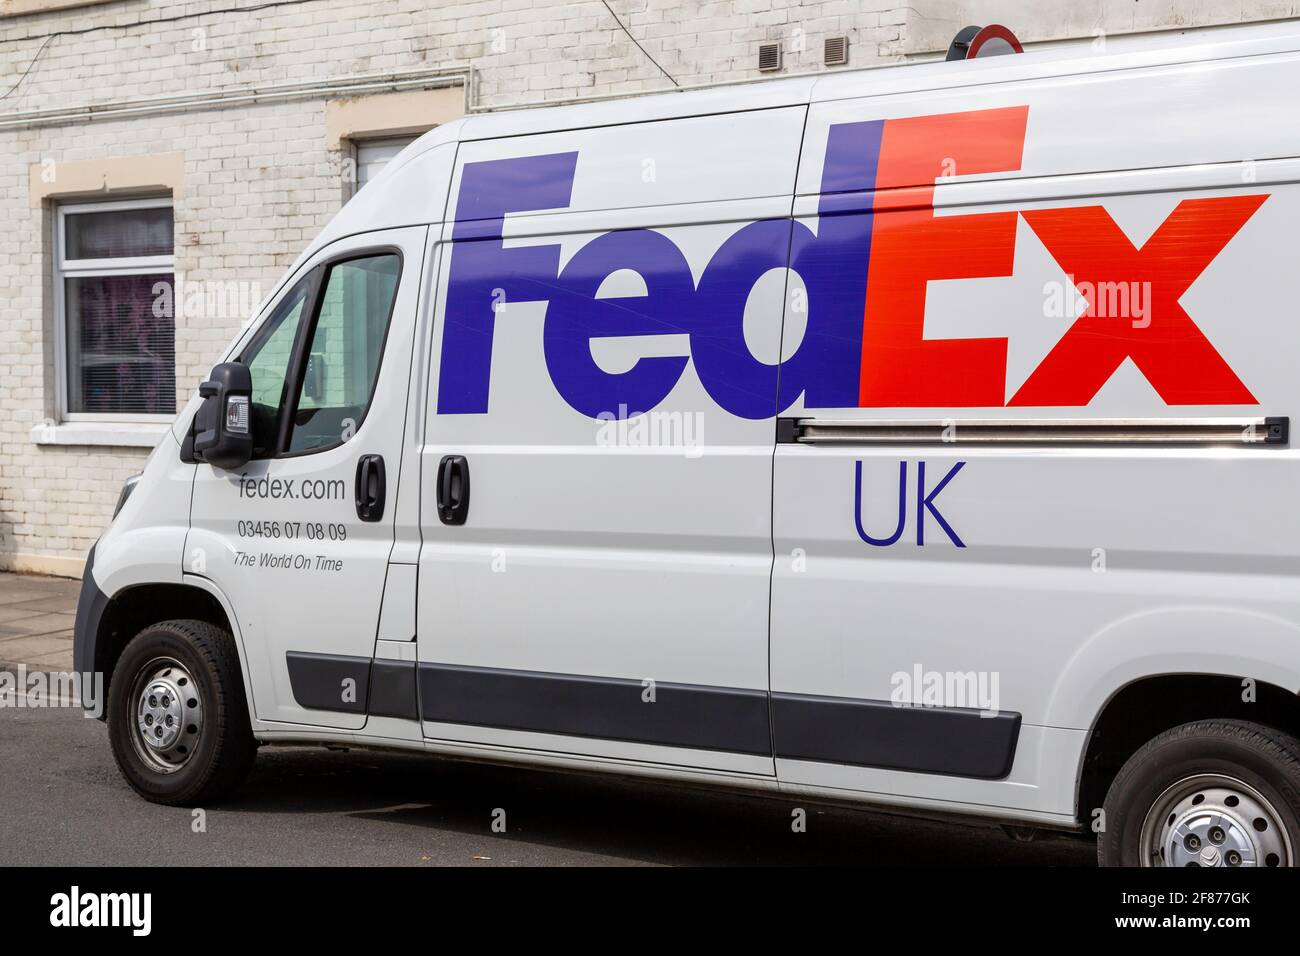 Le logo FedEx sur le côté d'un camion de livraison Banque D'Images